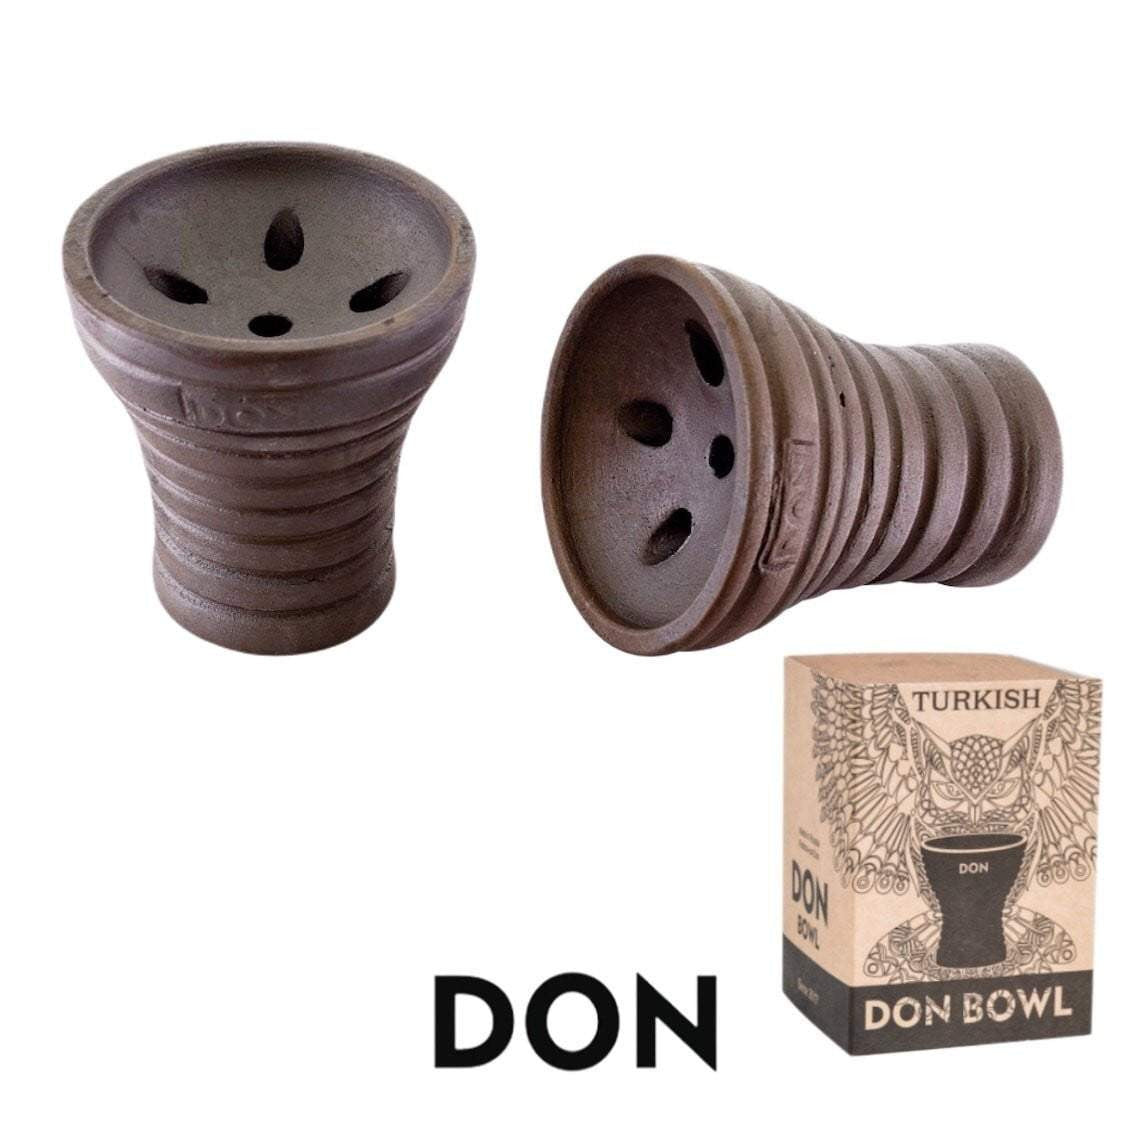 Don Bow Turkish Hookah Bowl